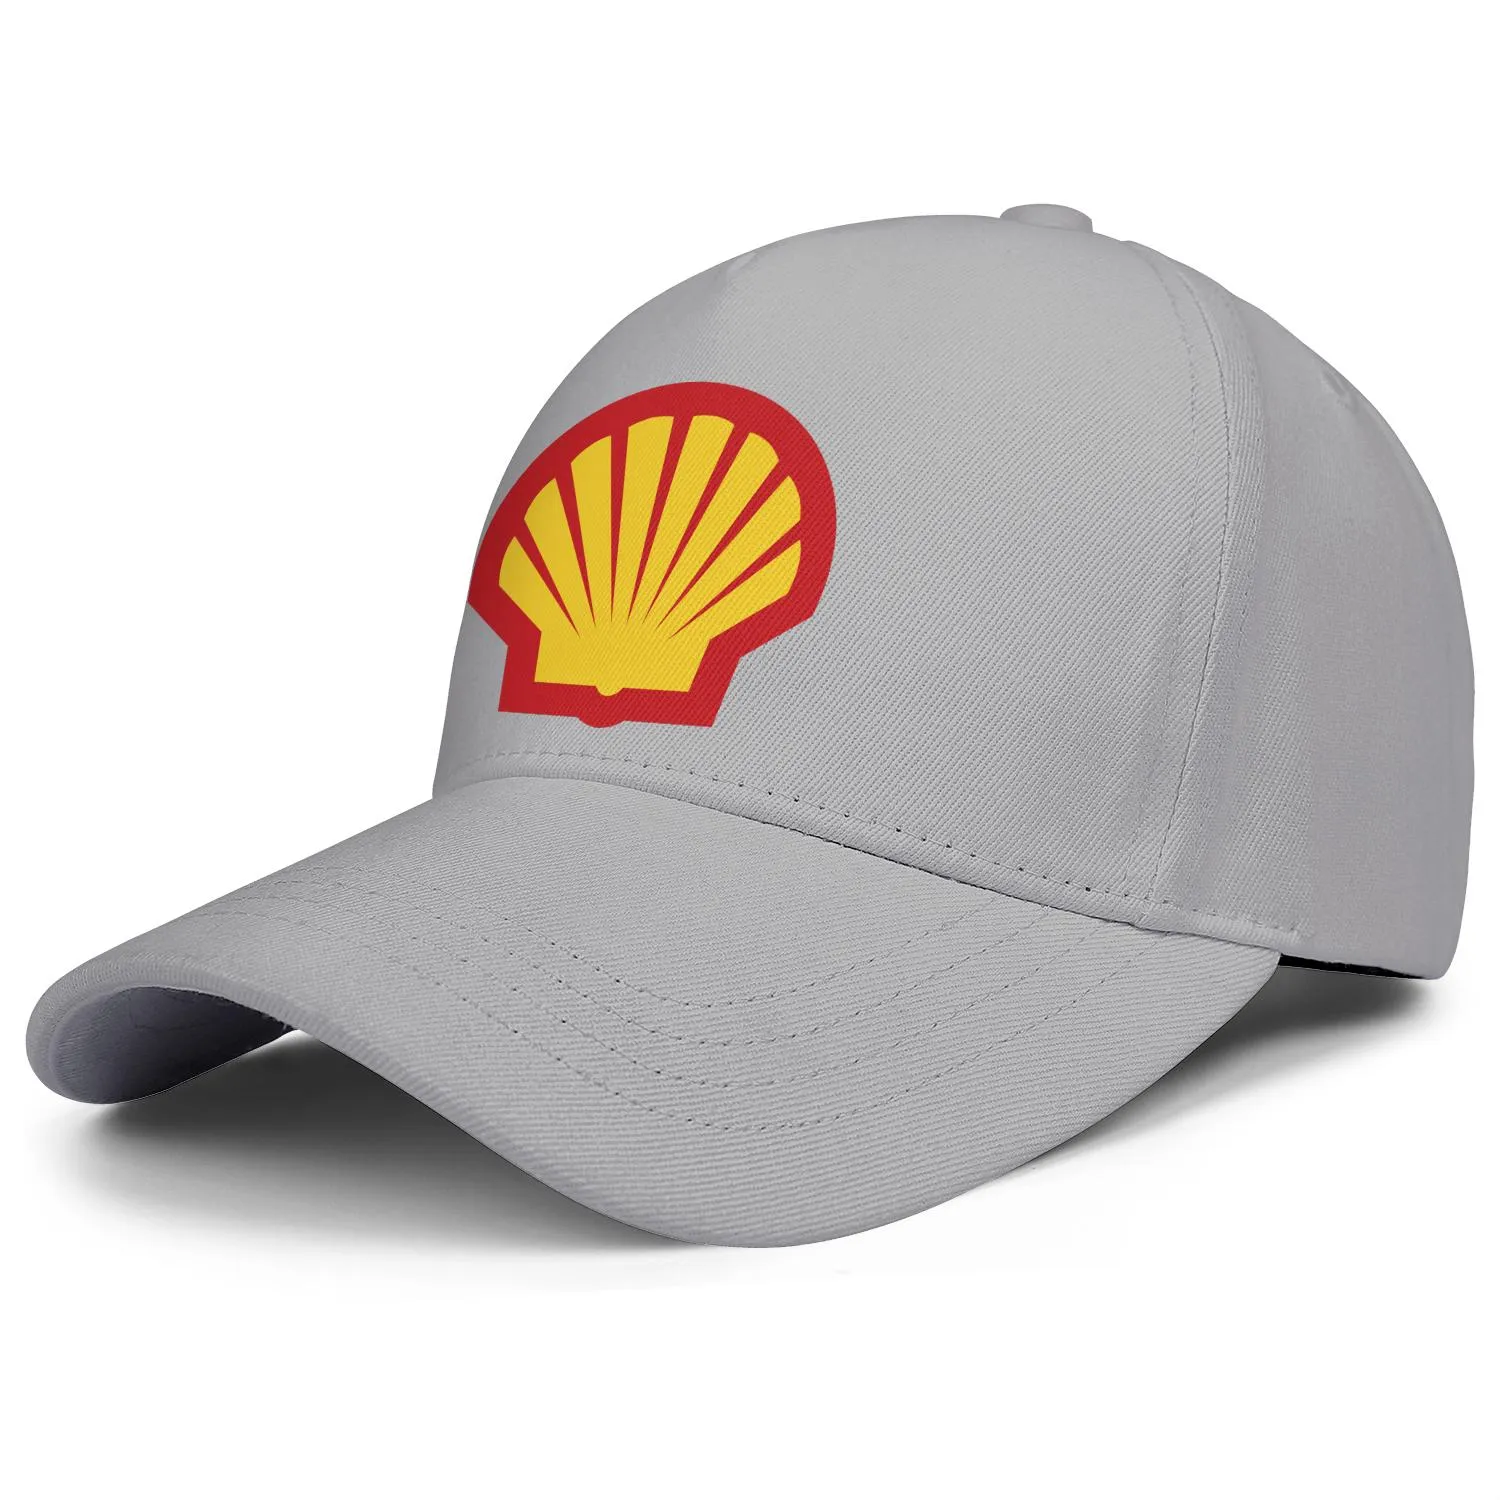 Shell gasoline gasolinera logo hombres y mujeres gorra de camionero ajustable equipado vintage lindo baseballhats localizador gasolina symbo250o